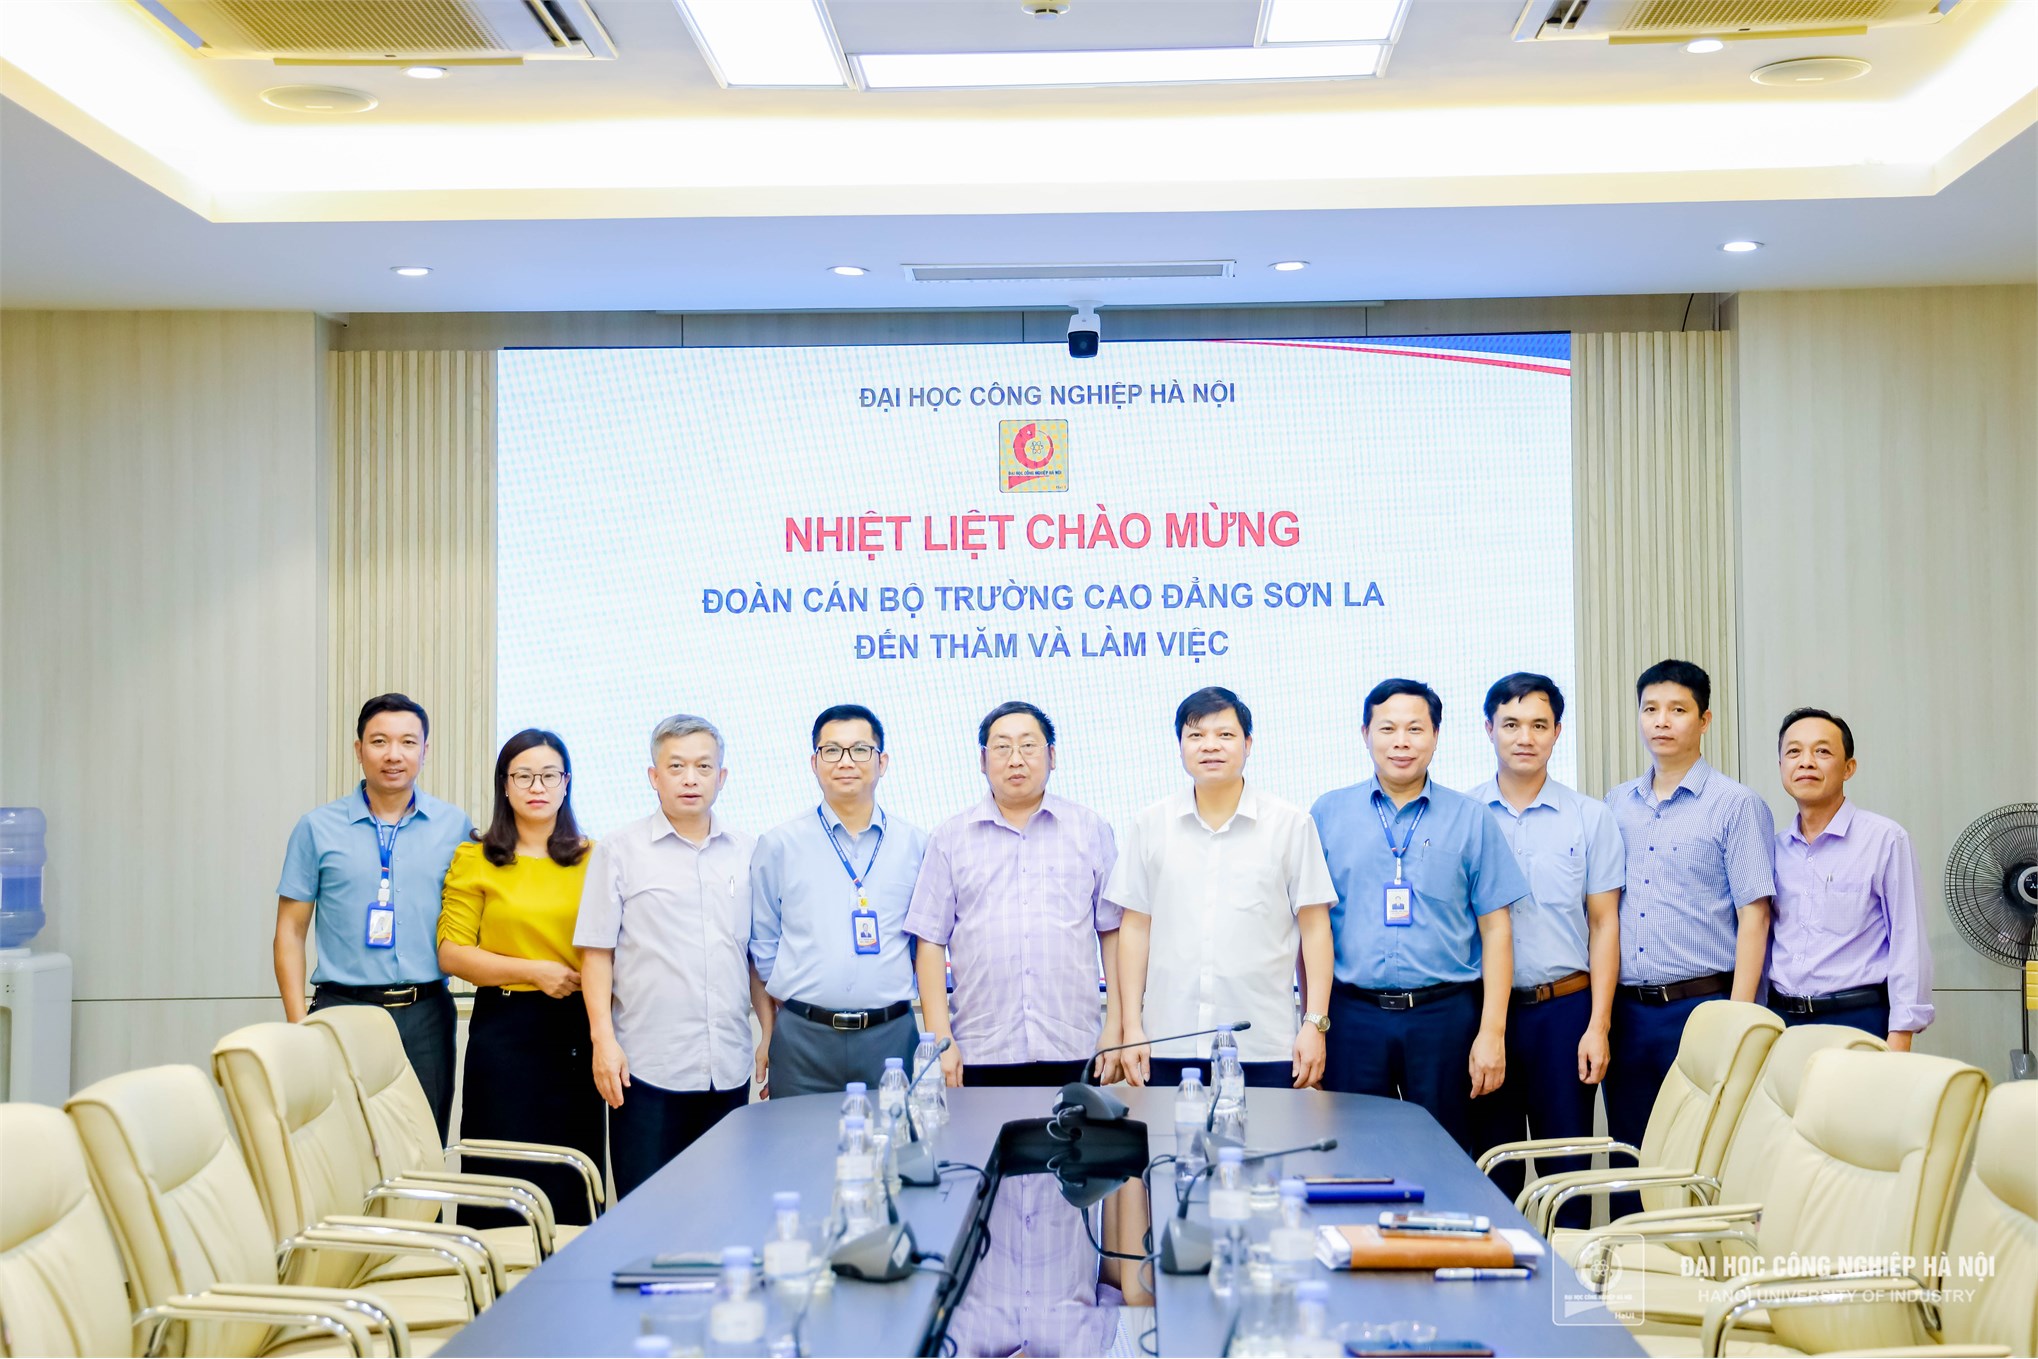 Đại học Công nghiệp Hà Nội tiếp đoàn công tác Trường Cao đẳng Sơn La